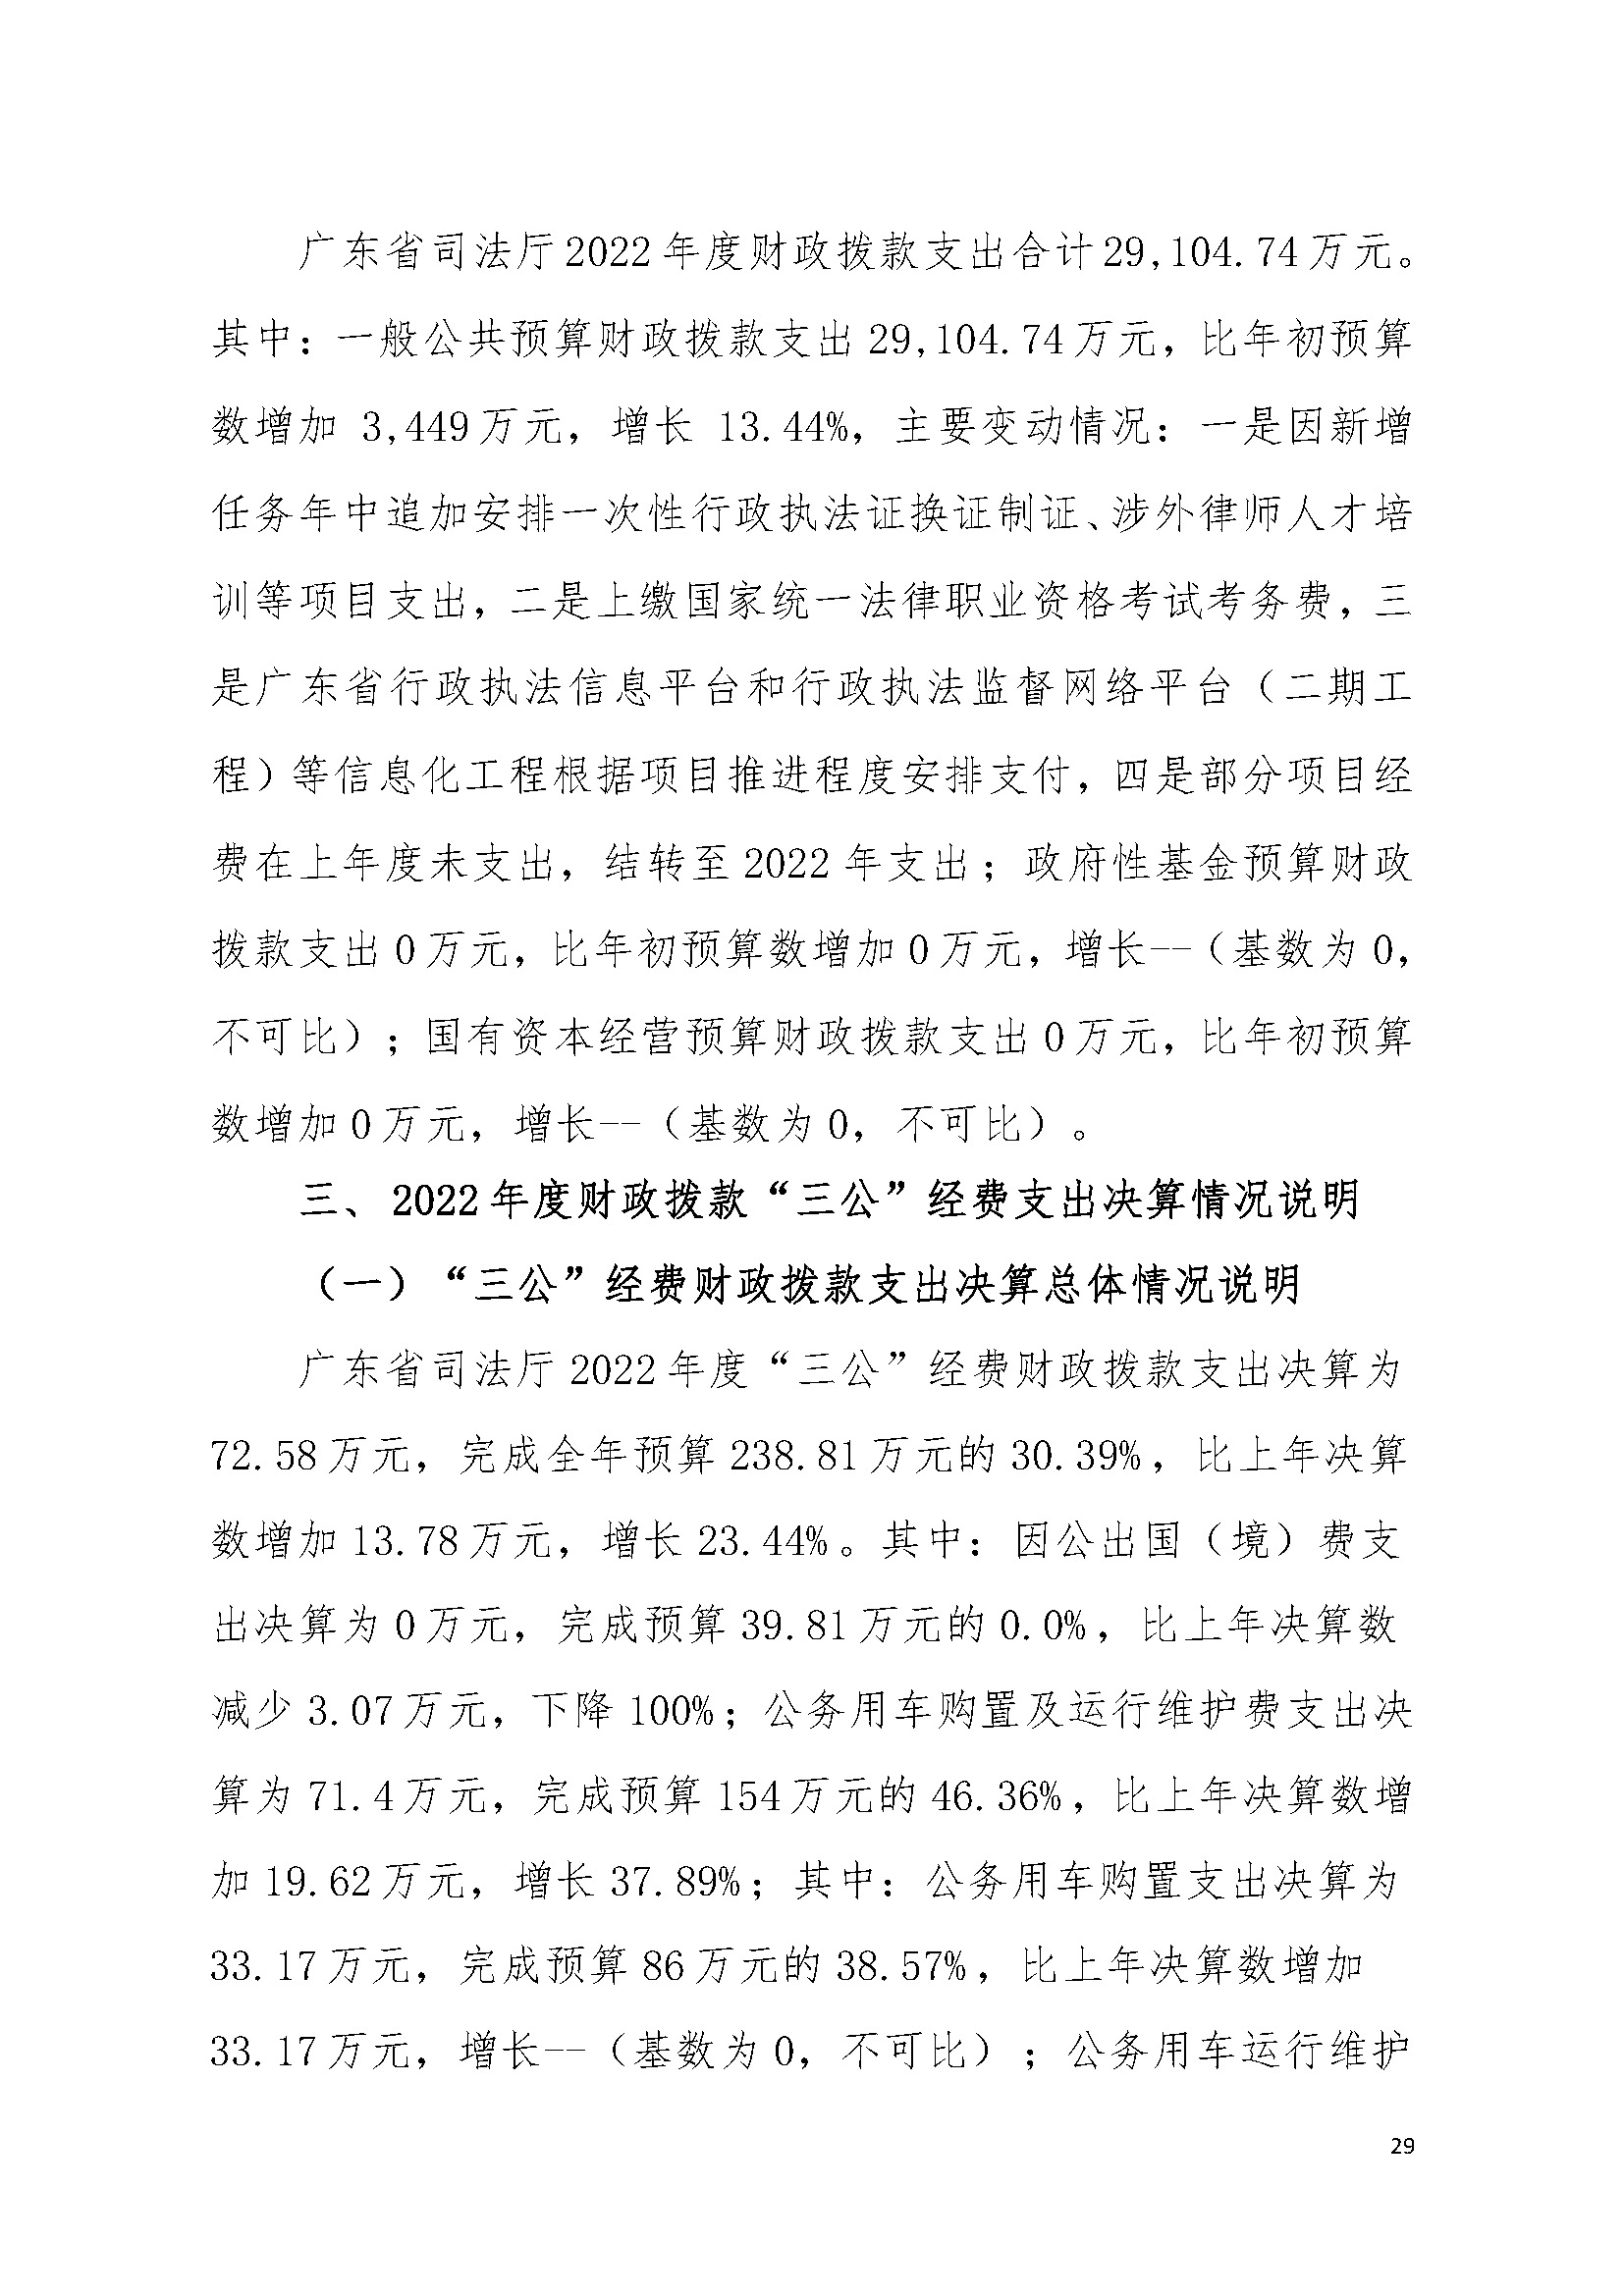 2022年度广东省司法厅部门决算__页面_29.jpg